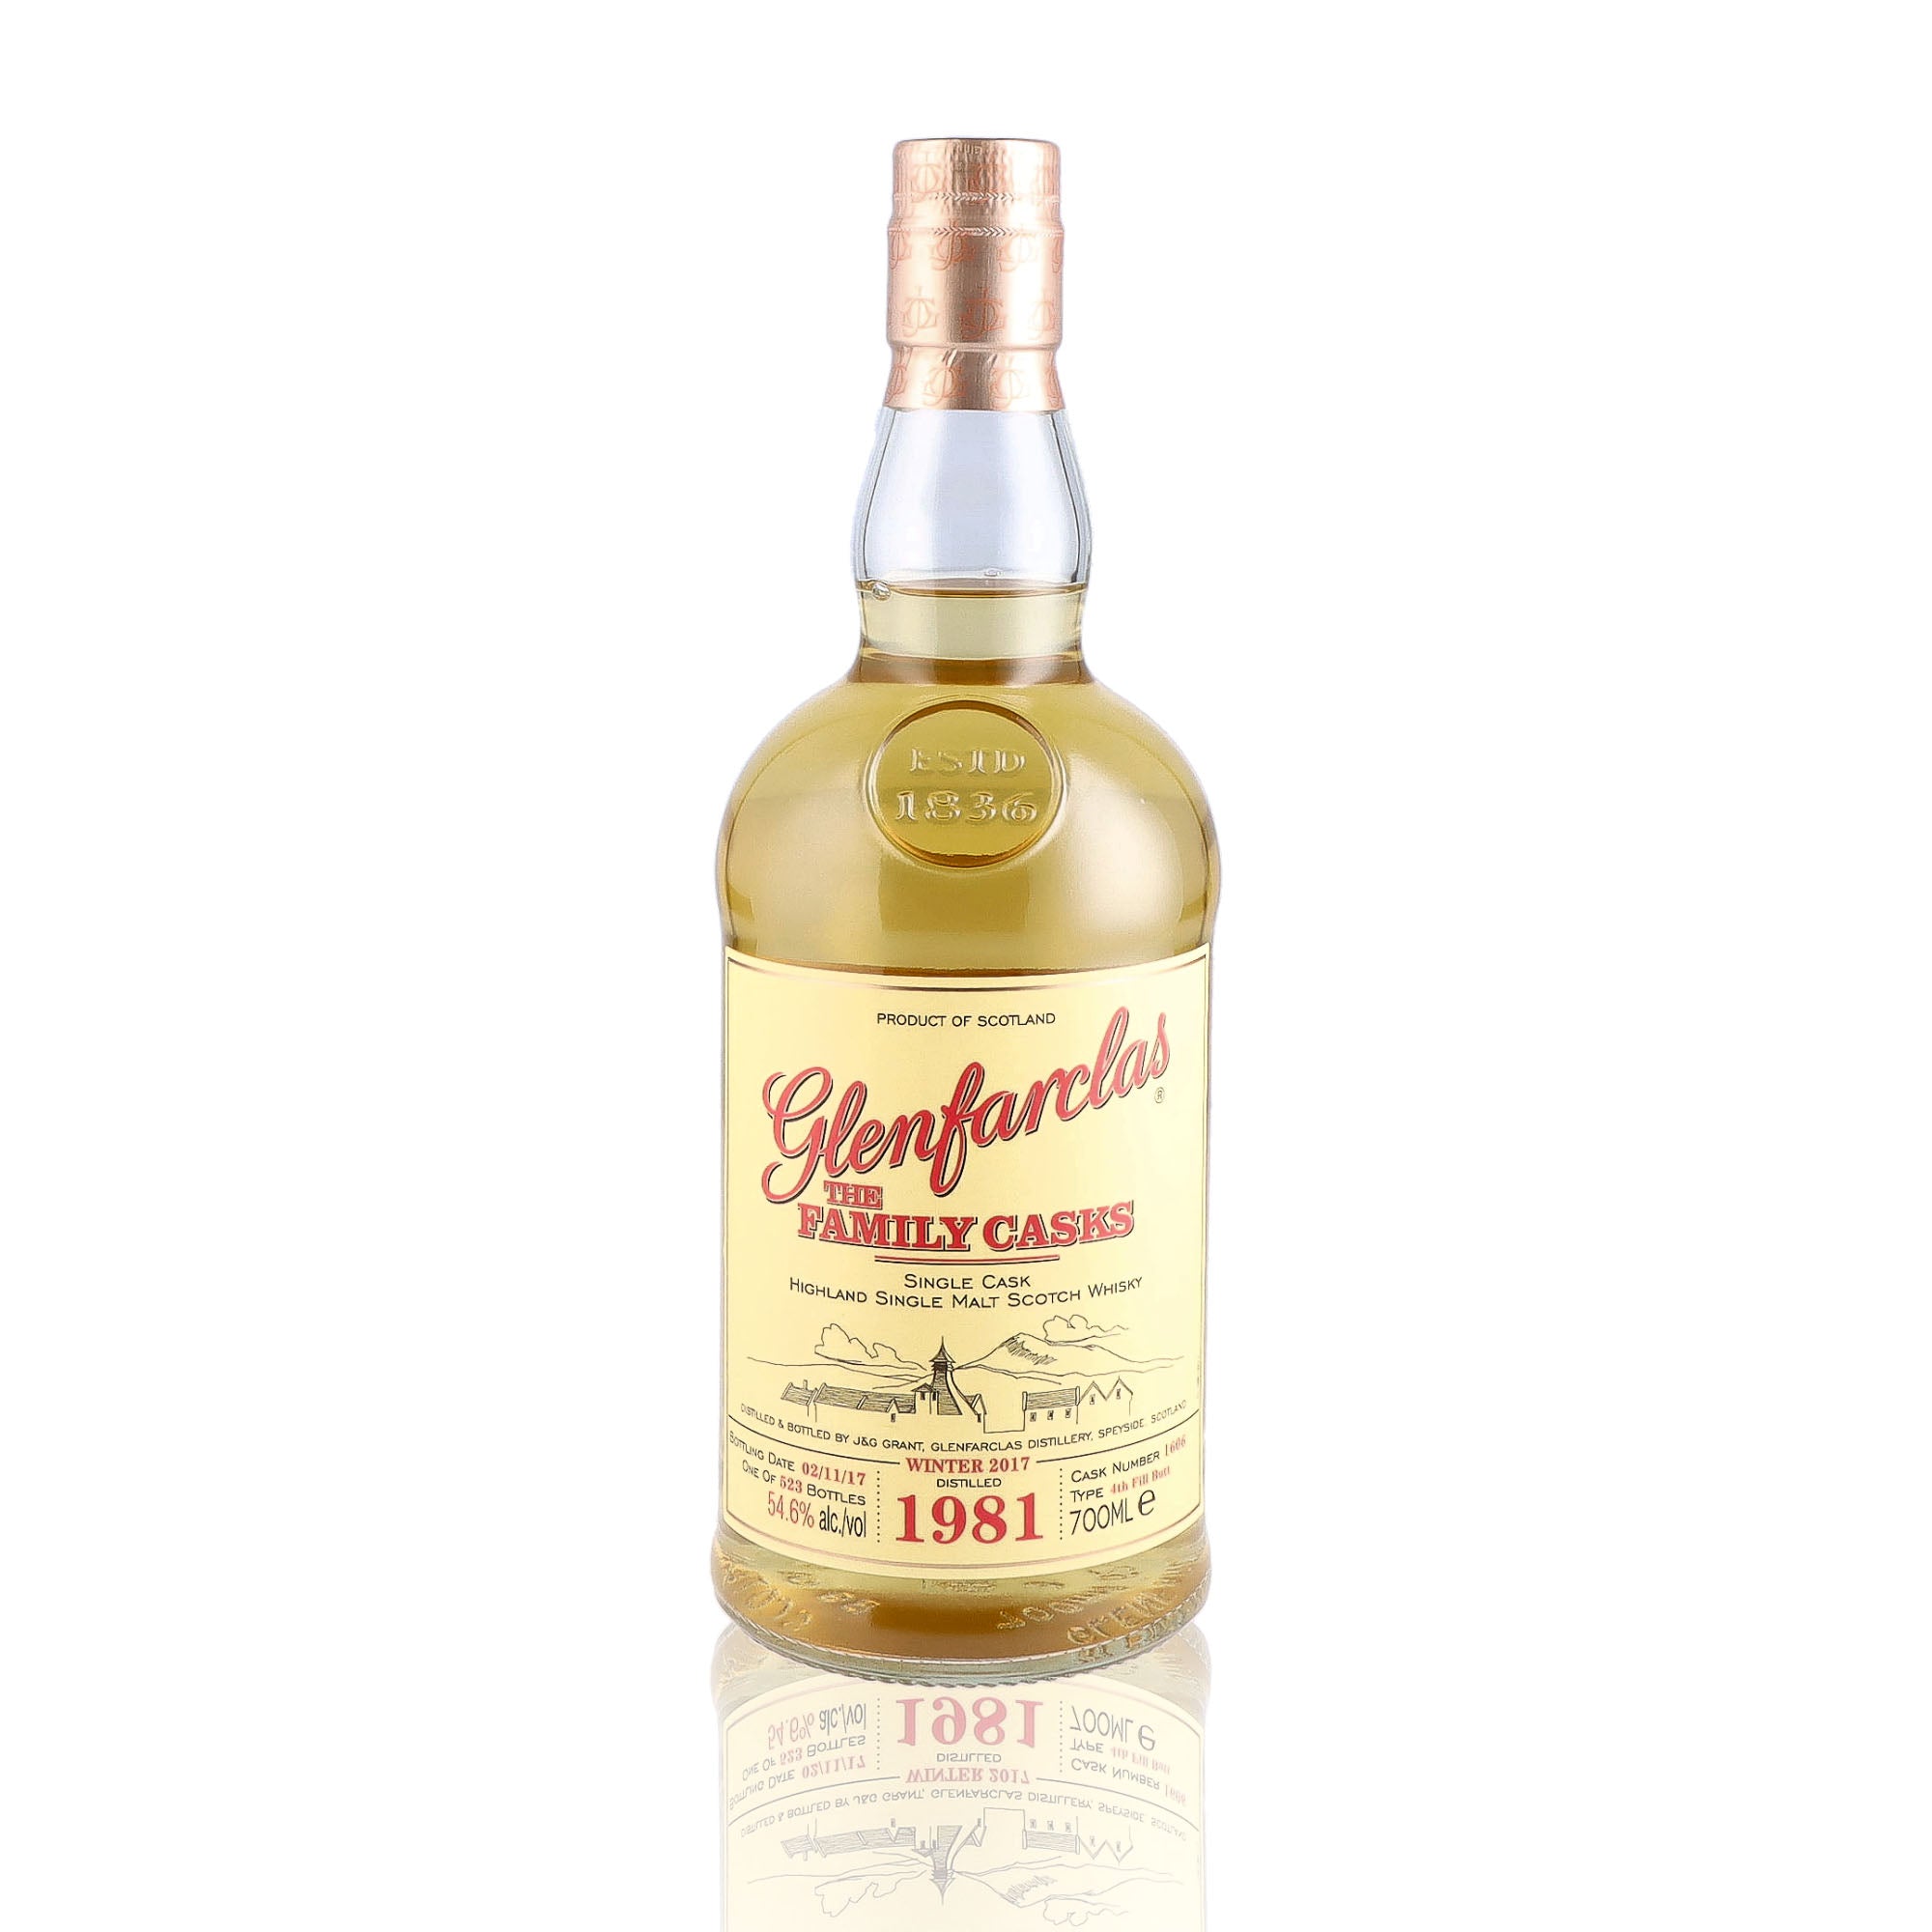 Une bouteille de Scotch Whisky Single Malt de la marque Glenfarclas, nommée The Family Casks, 30 ans d'âge, du millésime 1981.